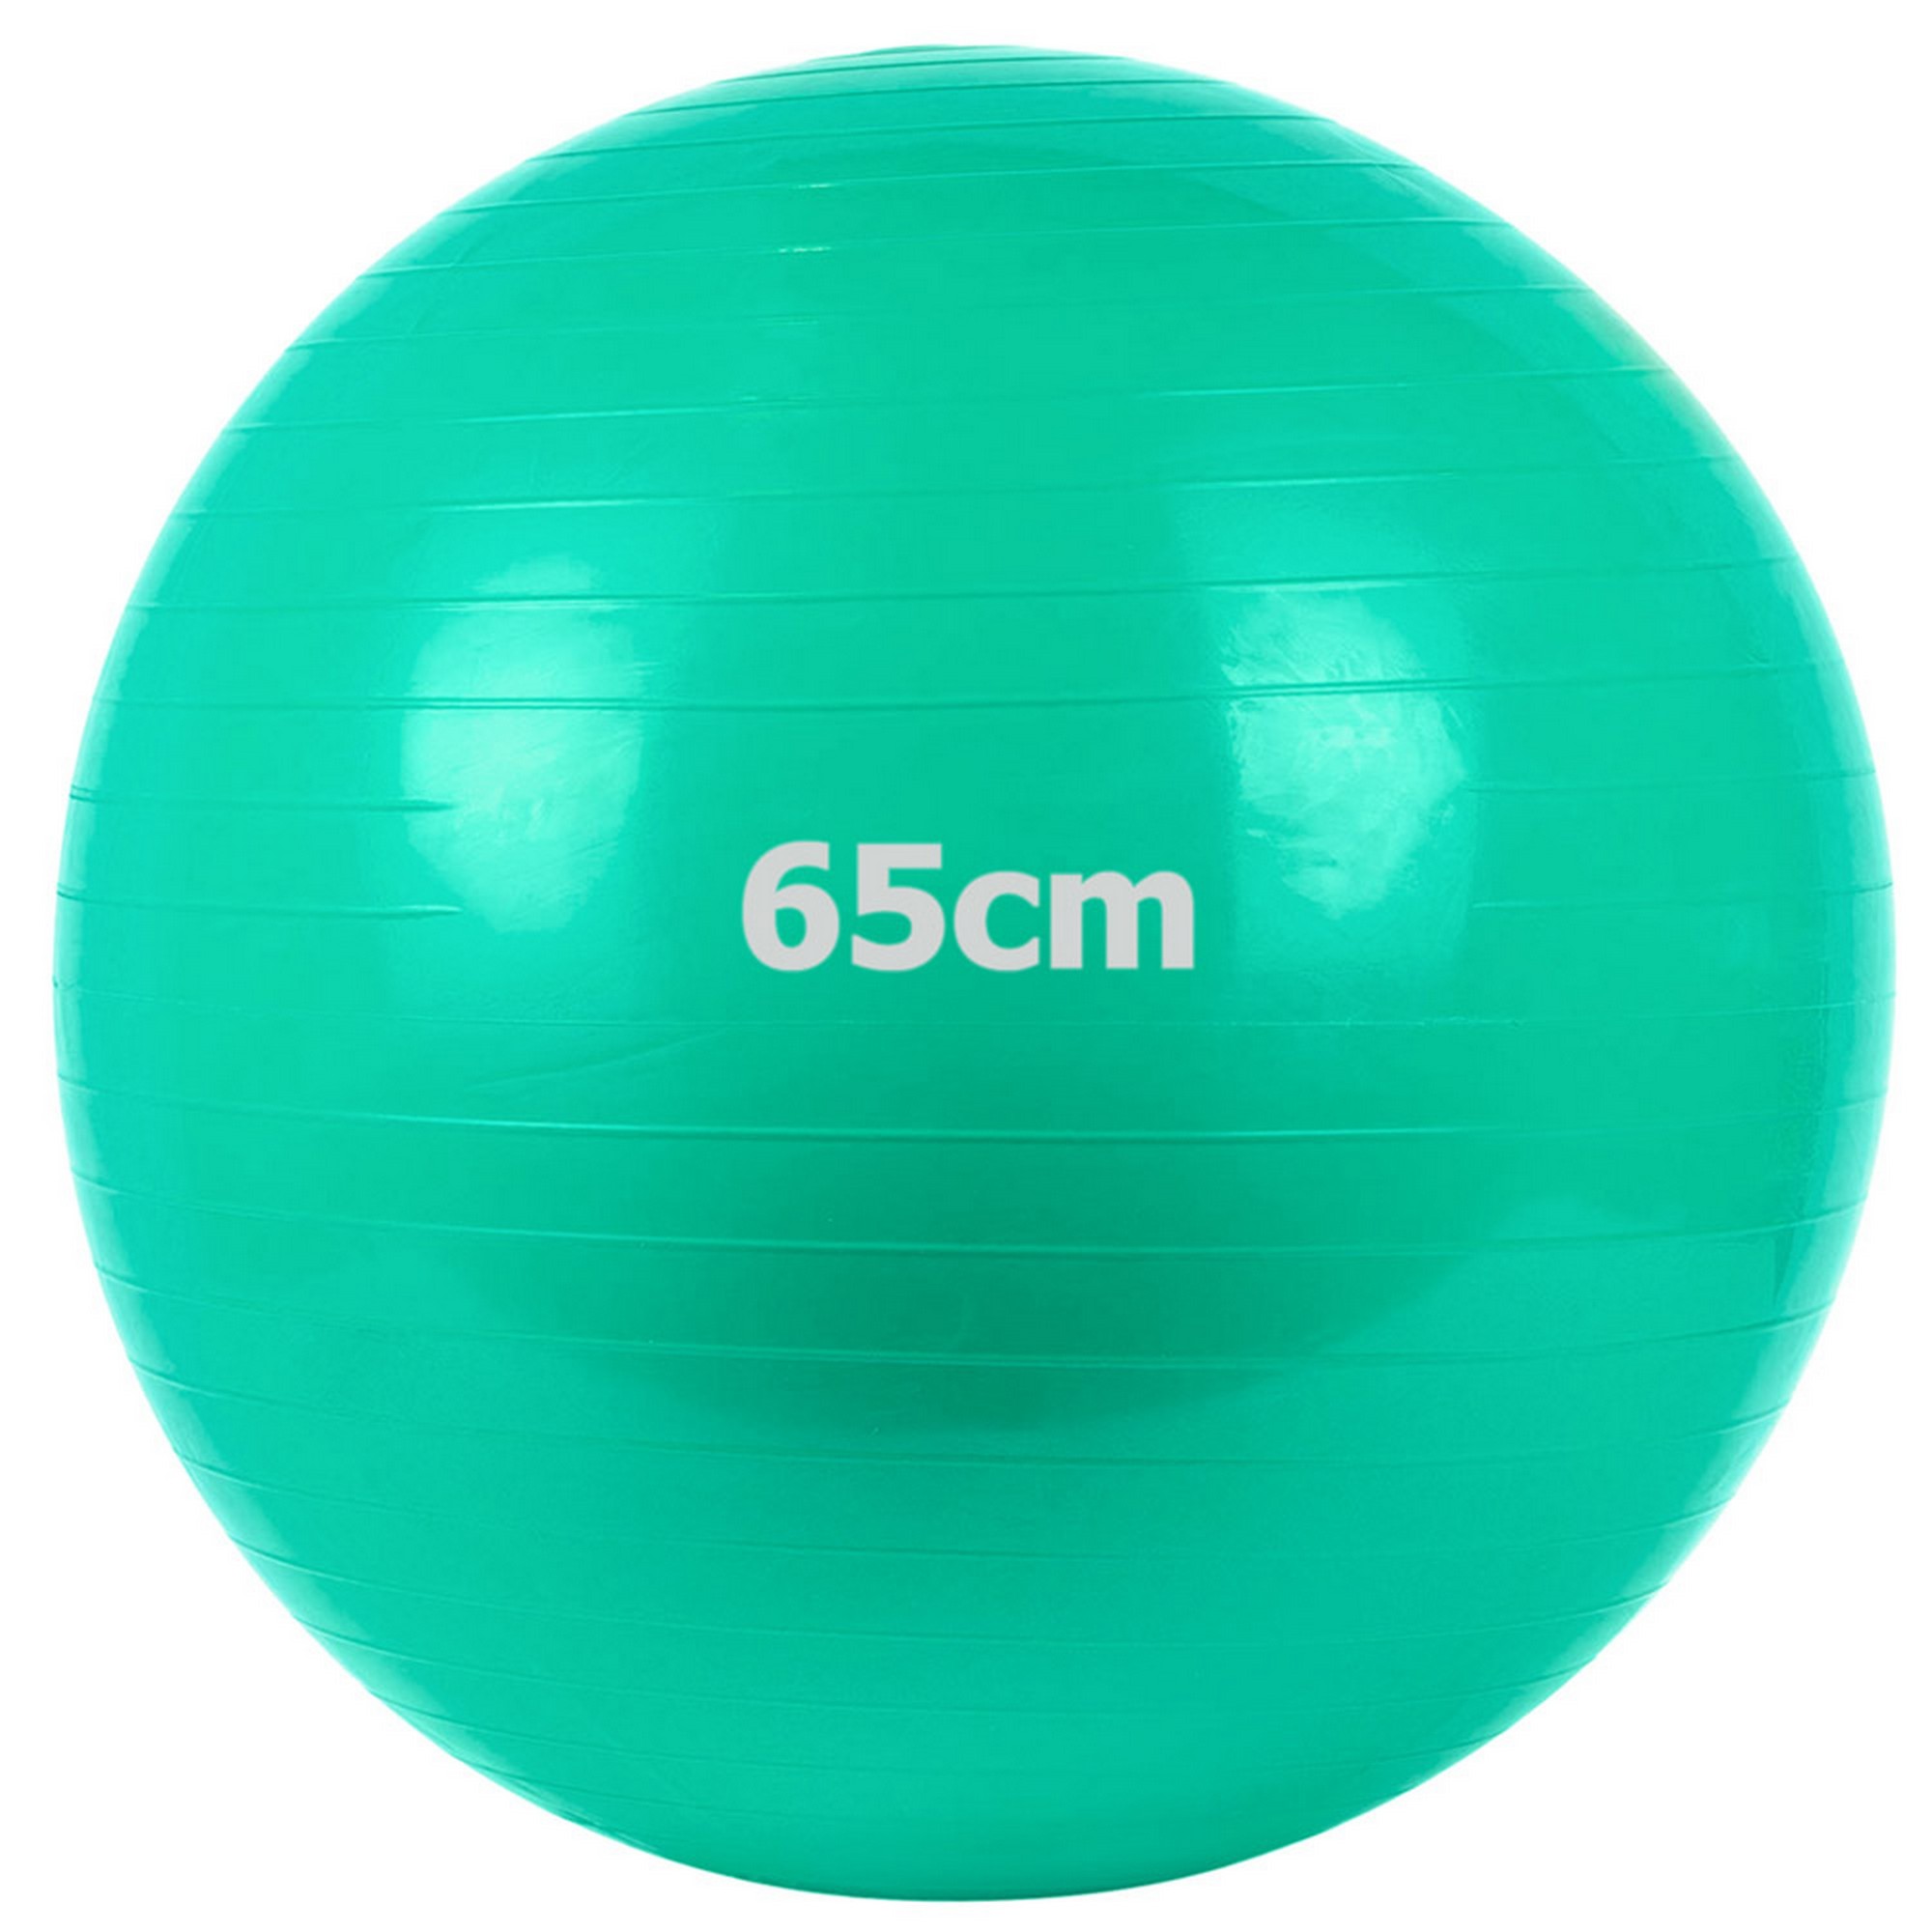   Gum Ball d65  Sportex GM-65-3 